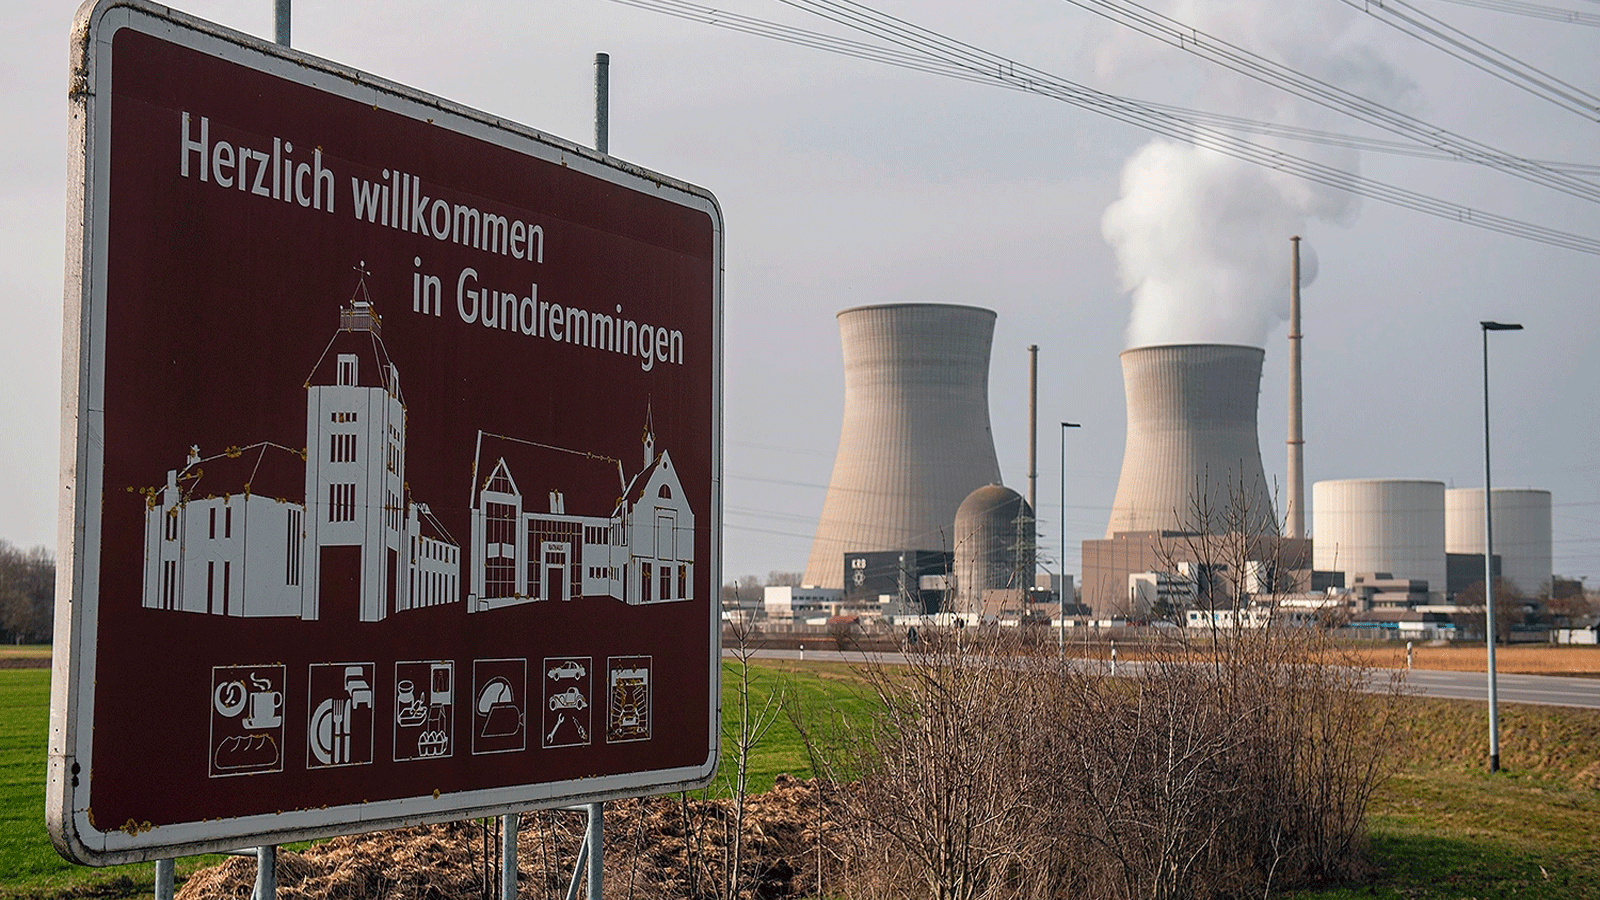 أزمة الطاقة تُحيي النقاش حول النووي في ألمانيا